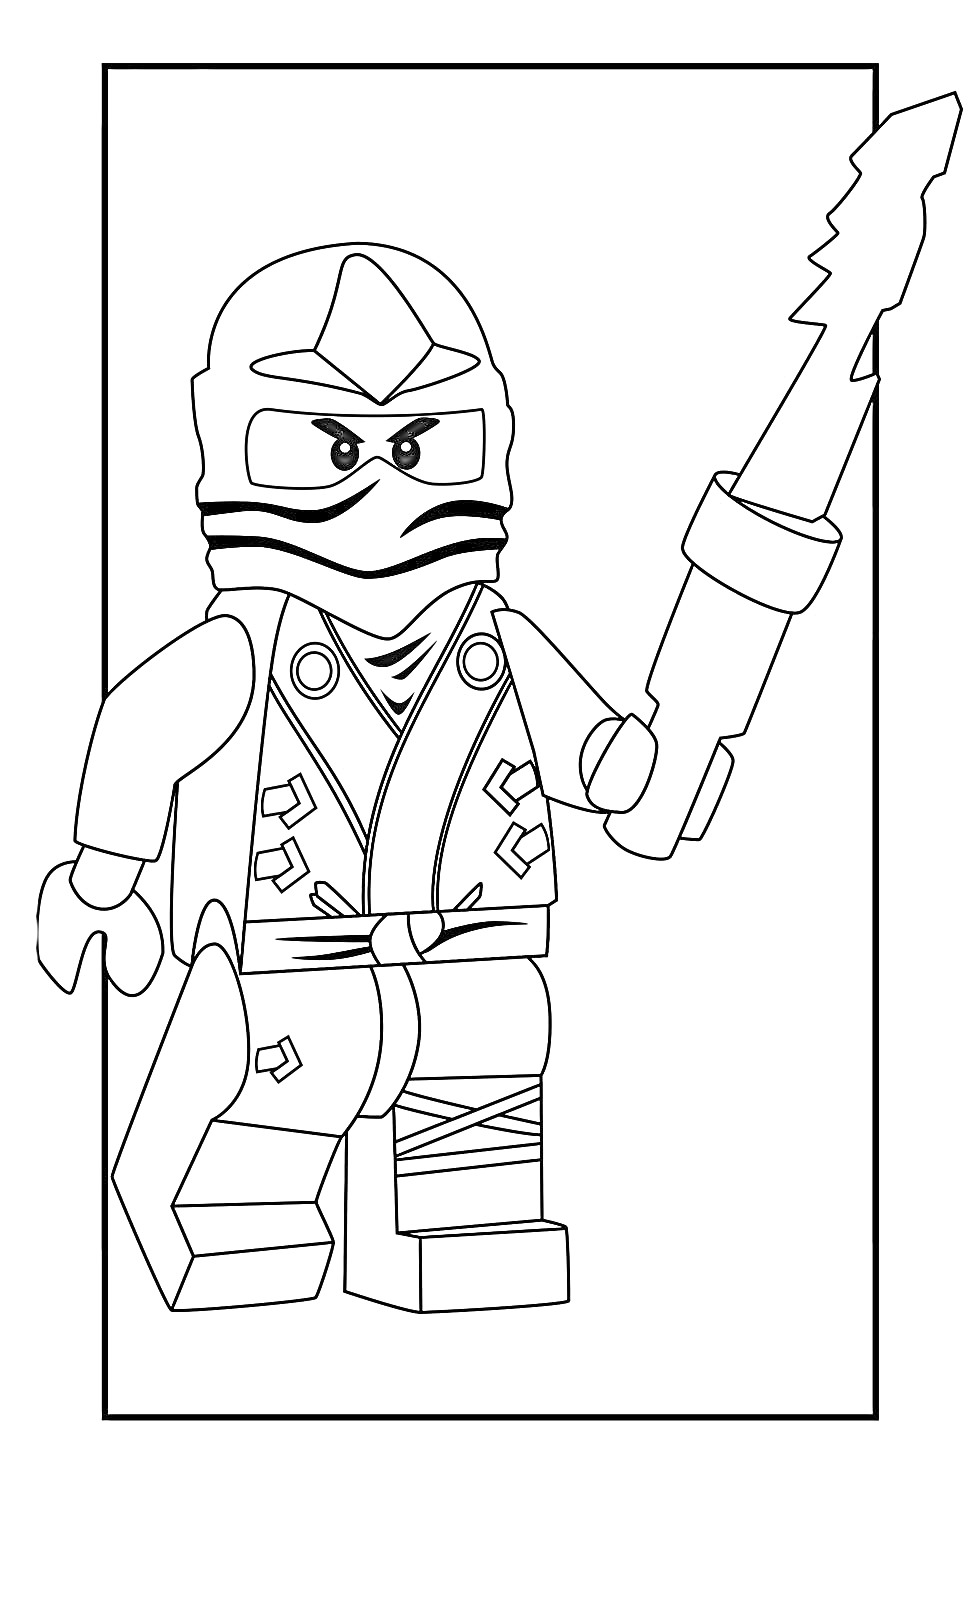 Лего Ниндзя Го персонаж с огненным мечом в позе атаки